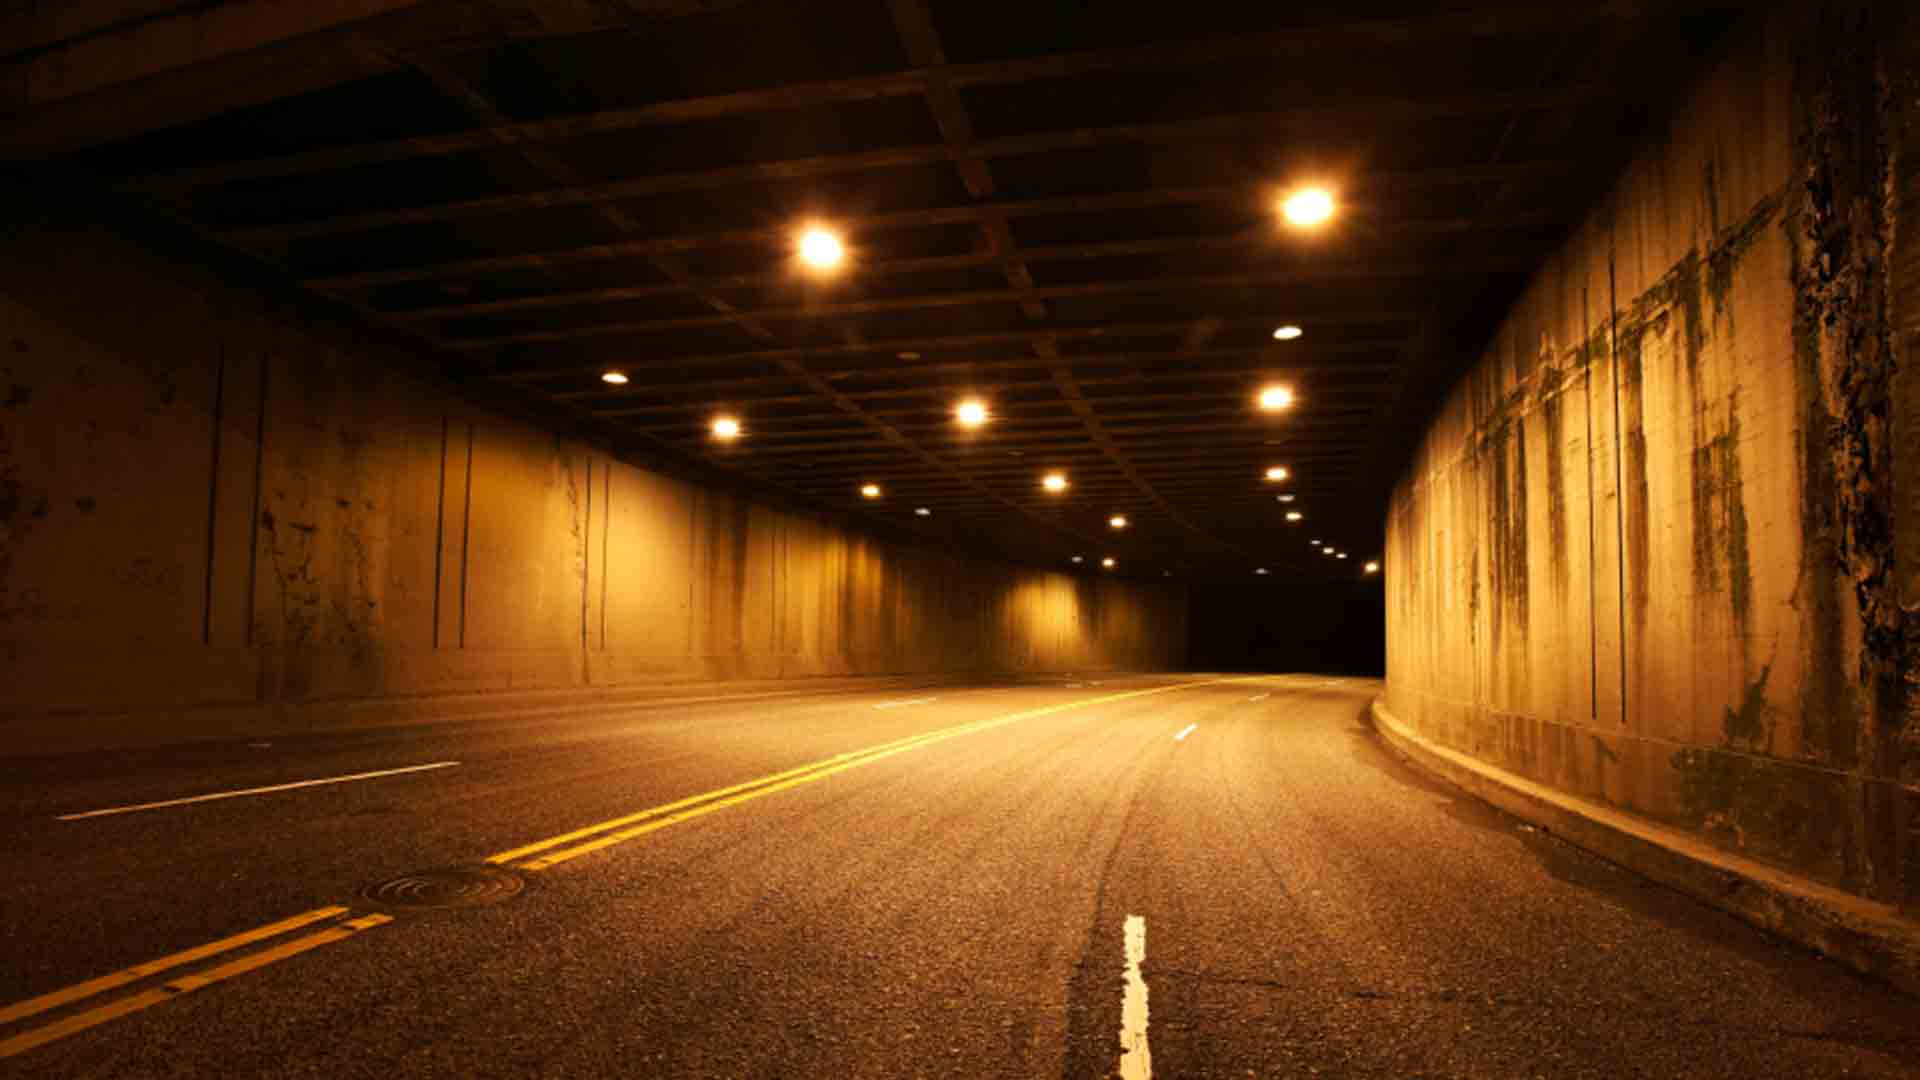 جدید ترین عکس پروفایل تونل با چراغ های روشن در شب